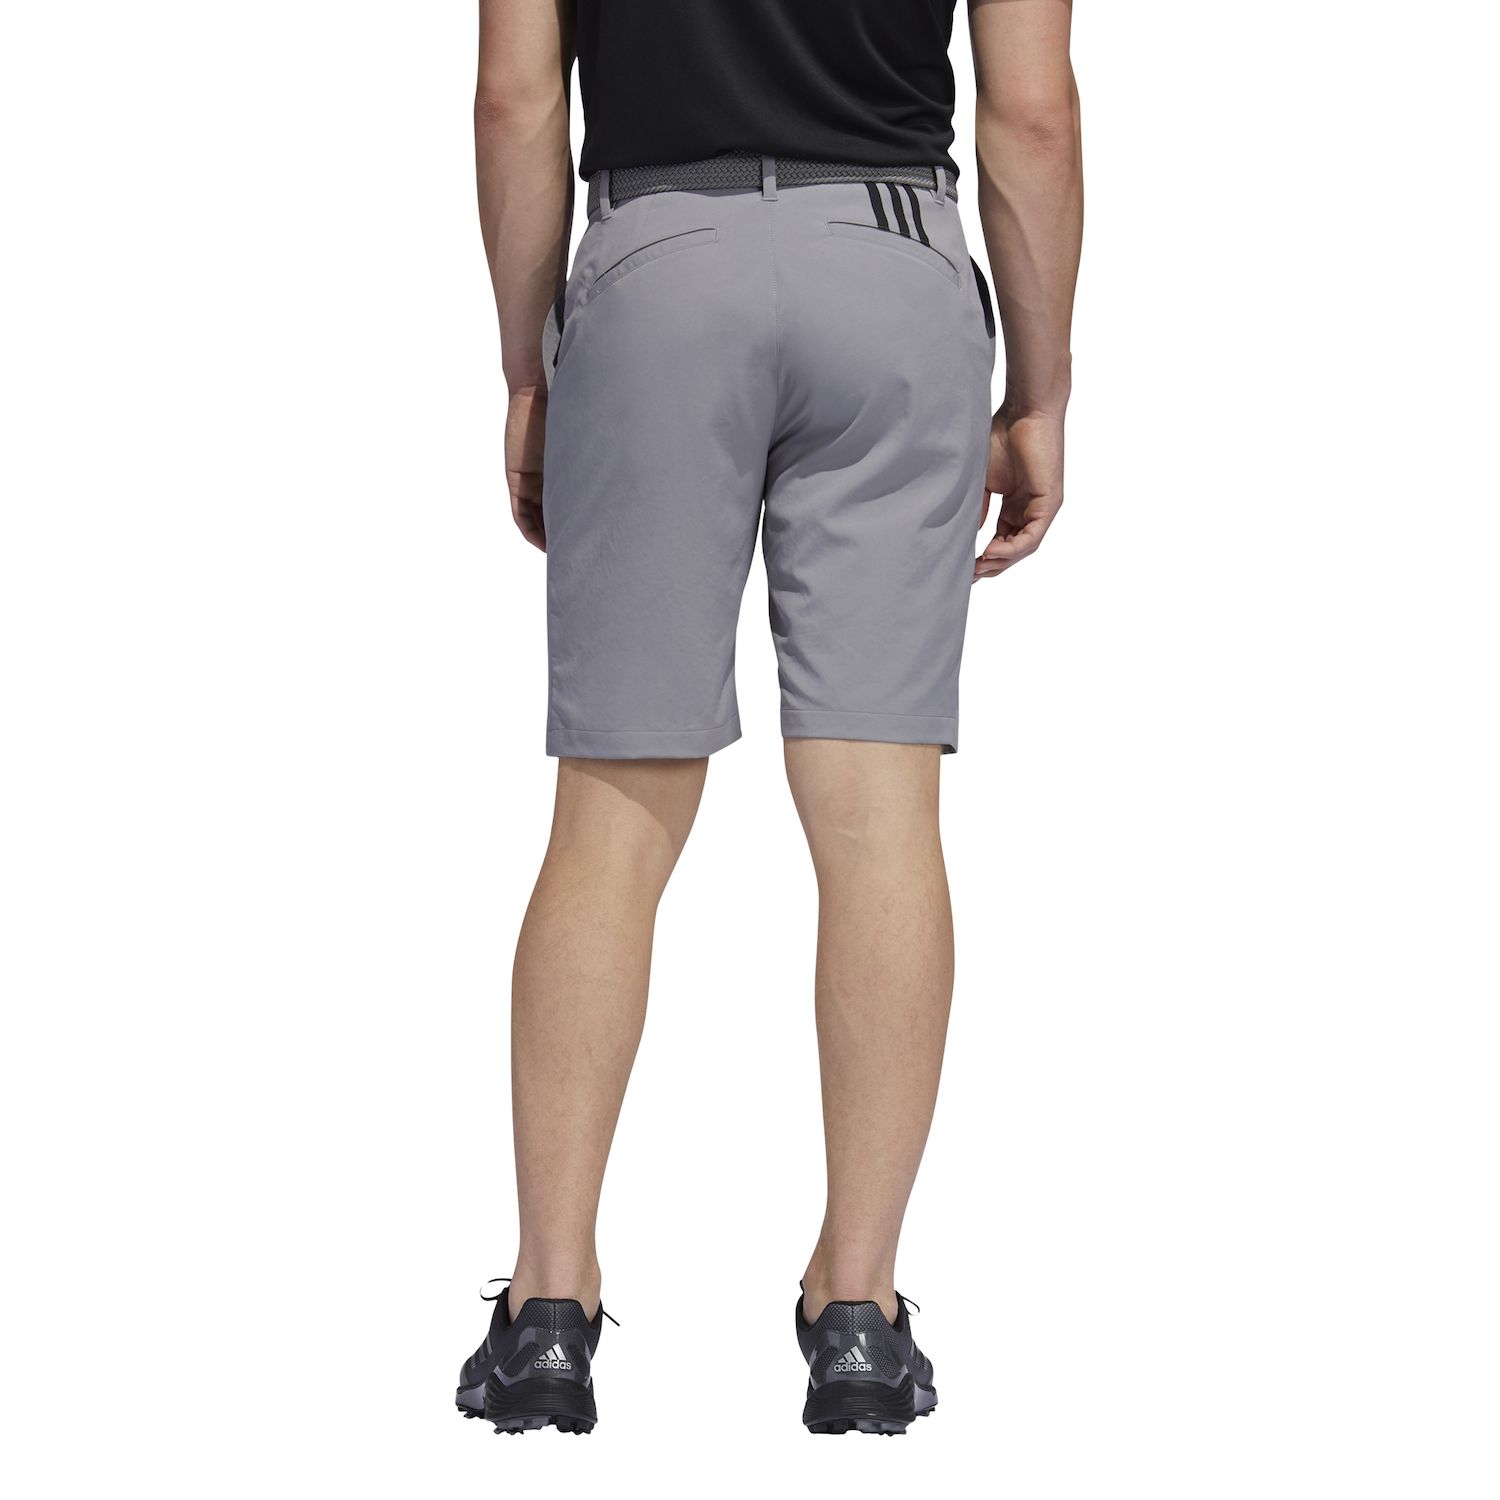 Мужские шорты для гольфа Primegreen adidas